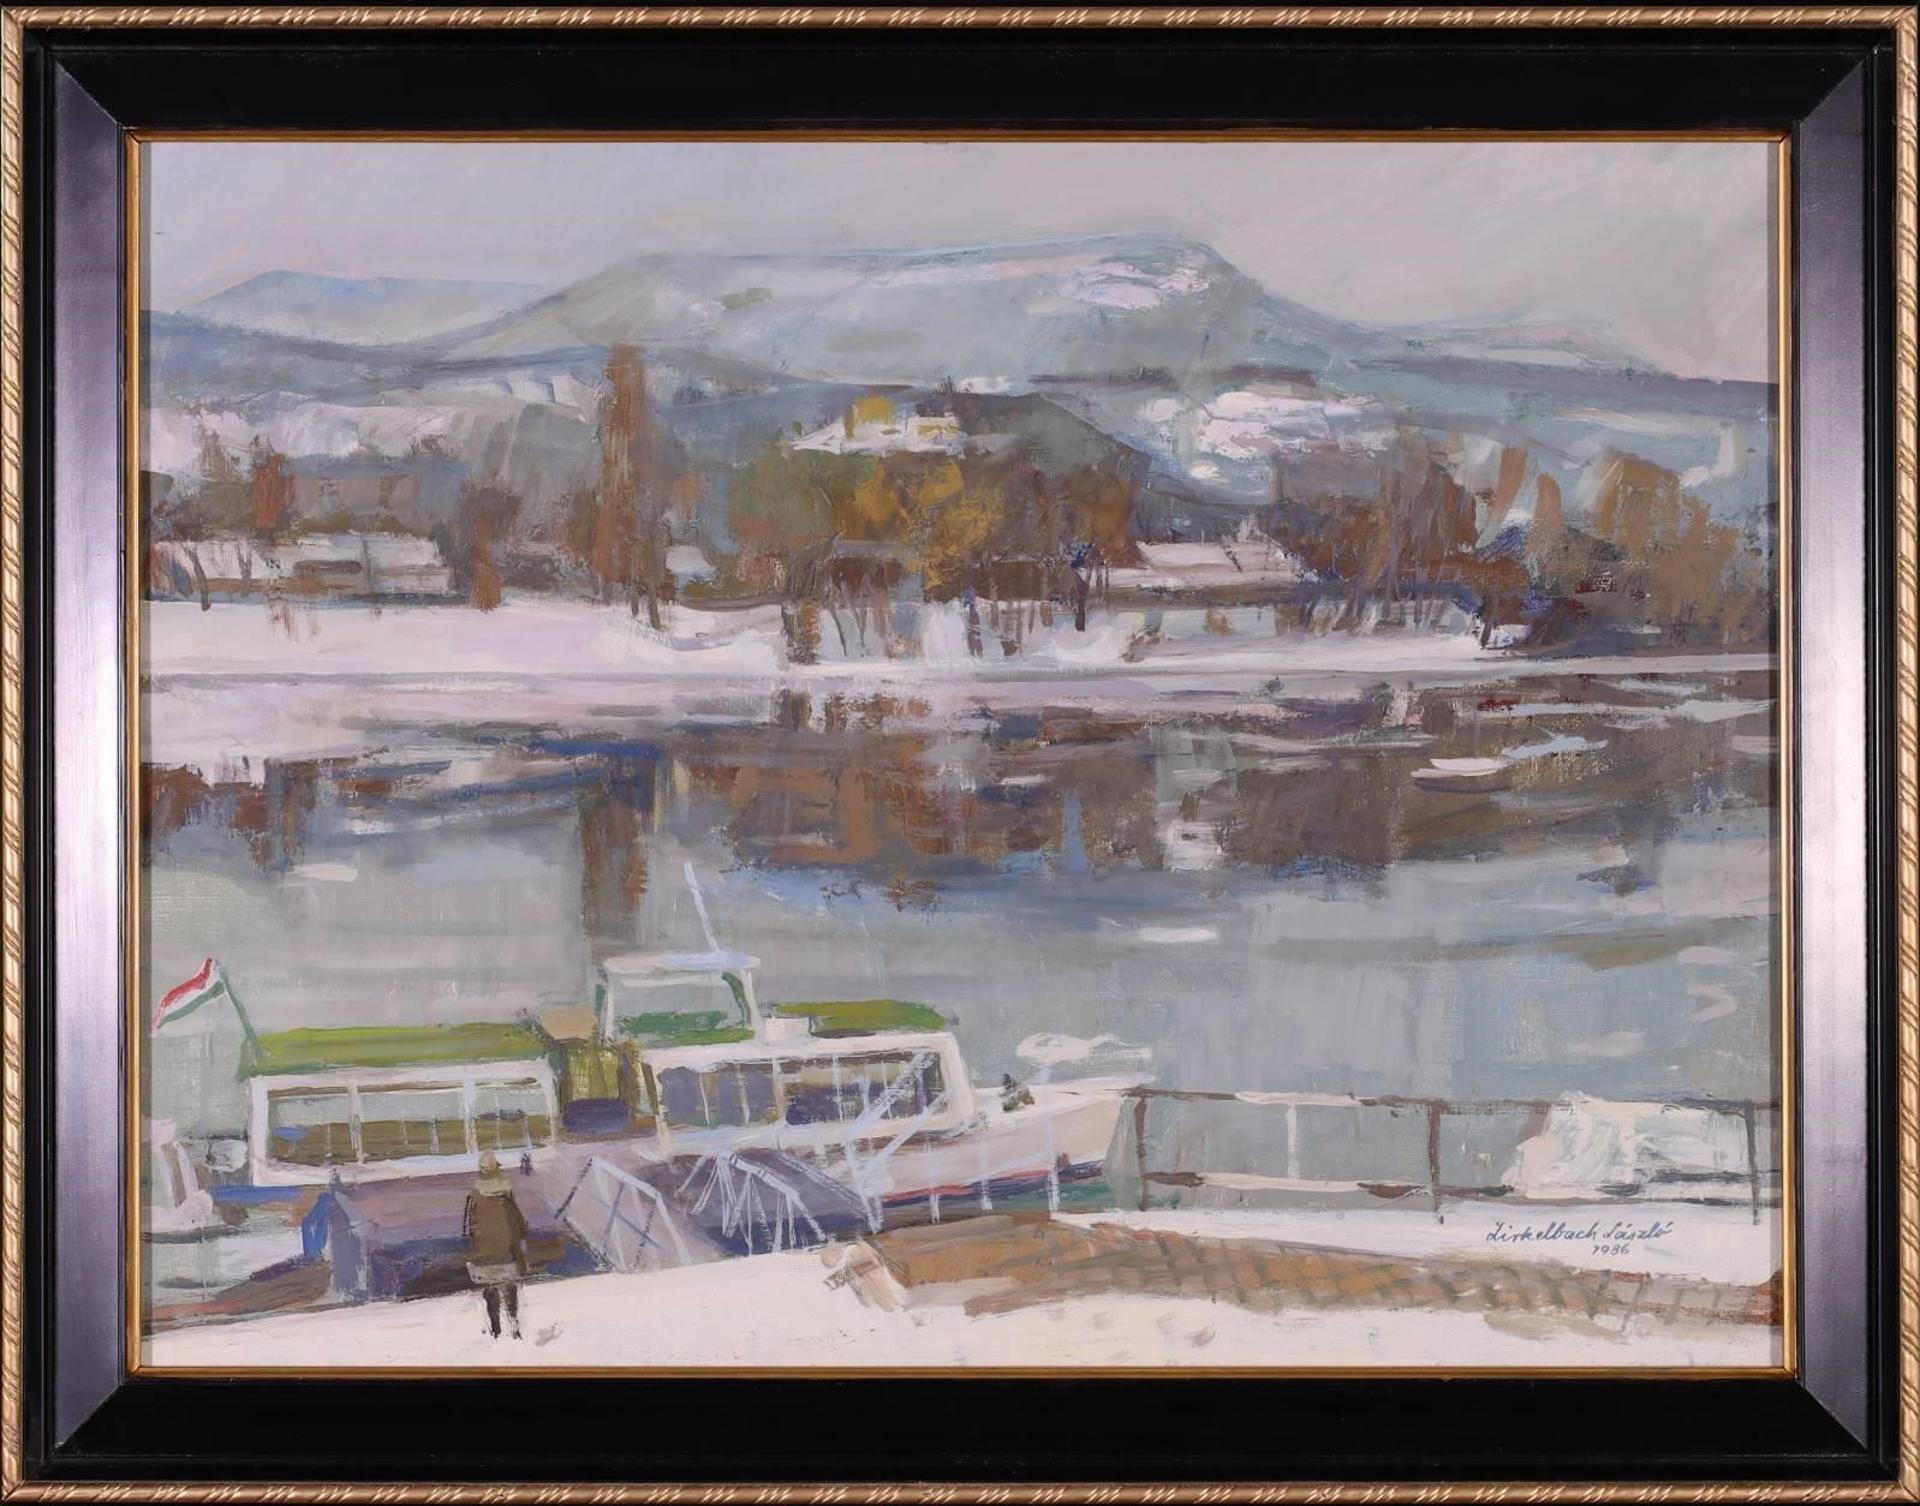 Laszlo Zirkelbach (1916-2014) - Untitled, Danube in Winter; 1986